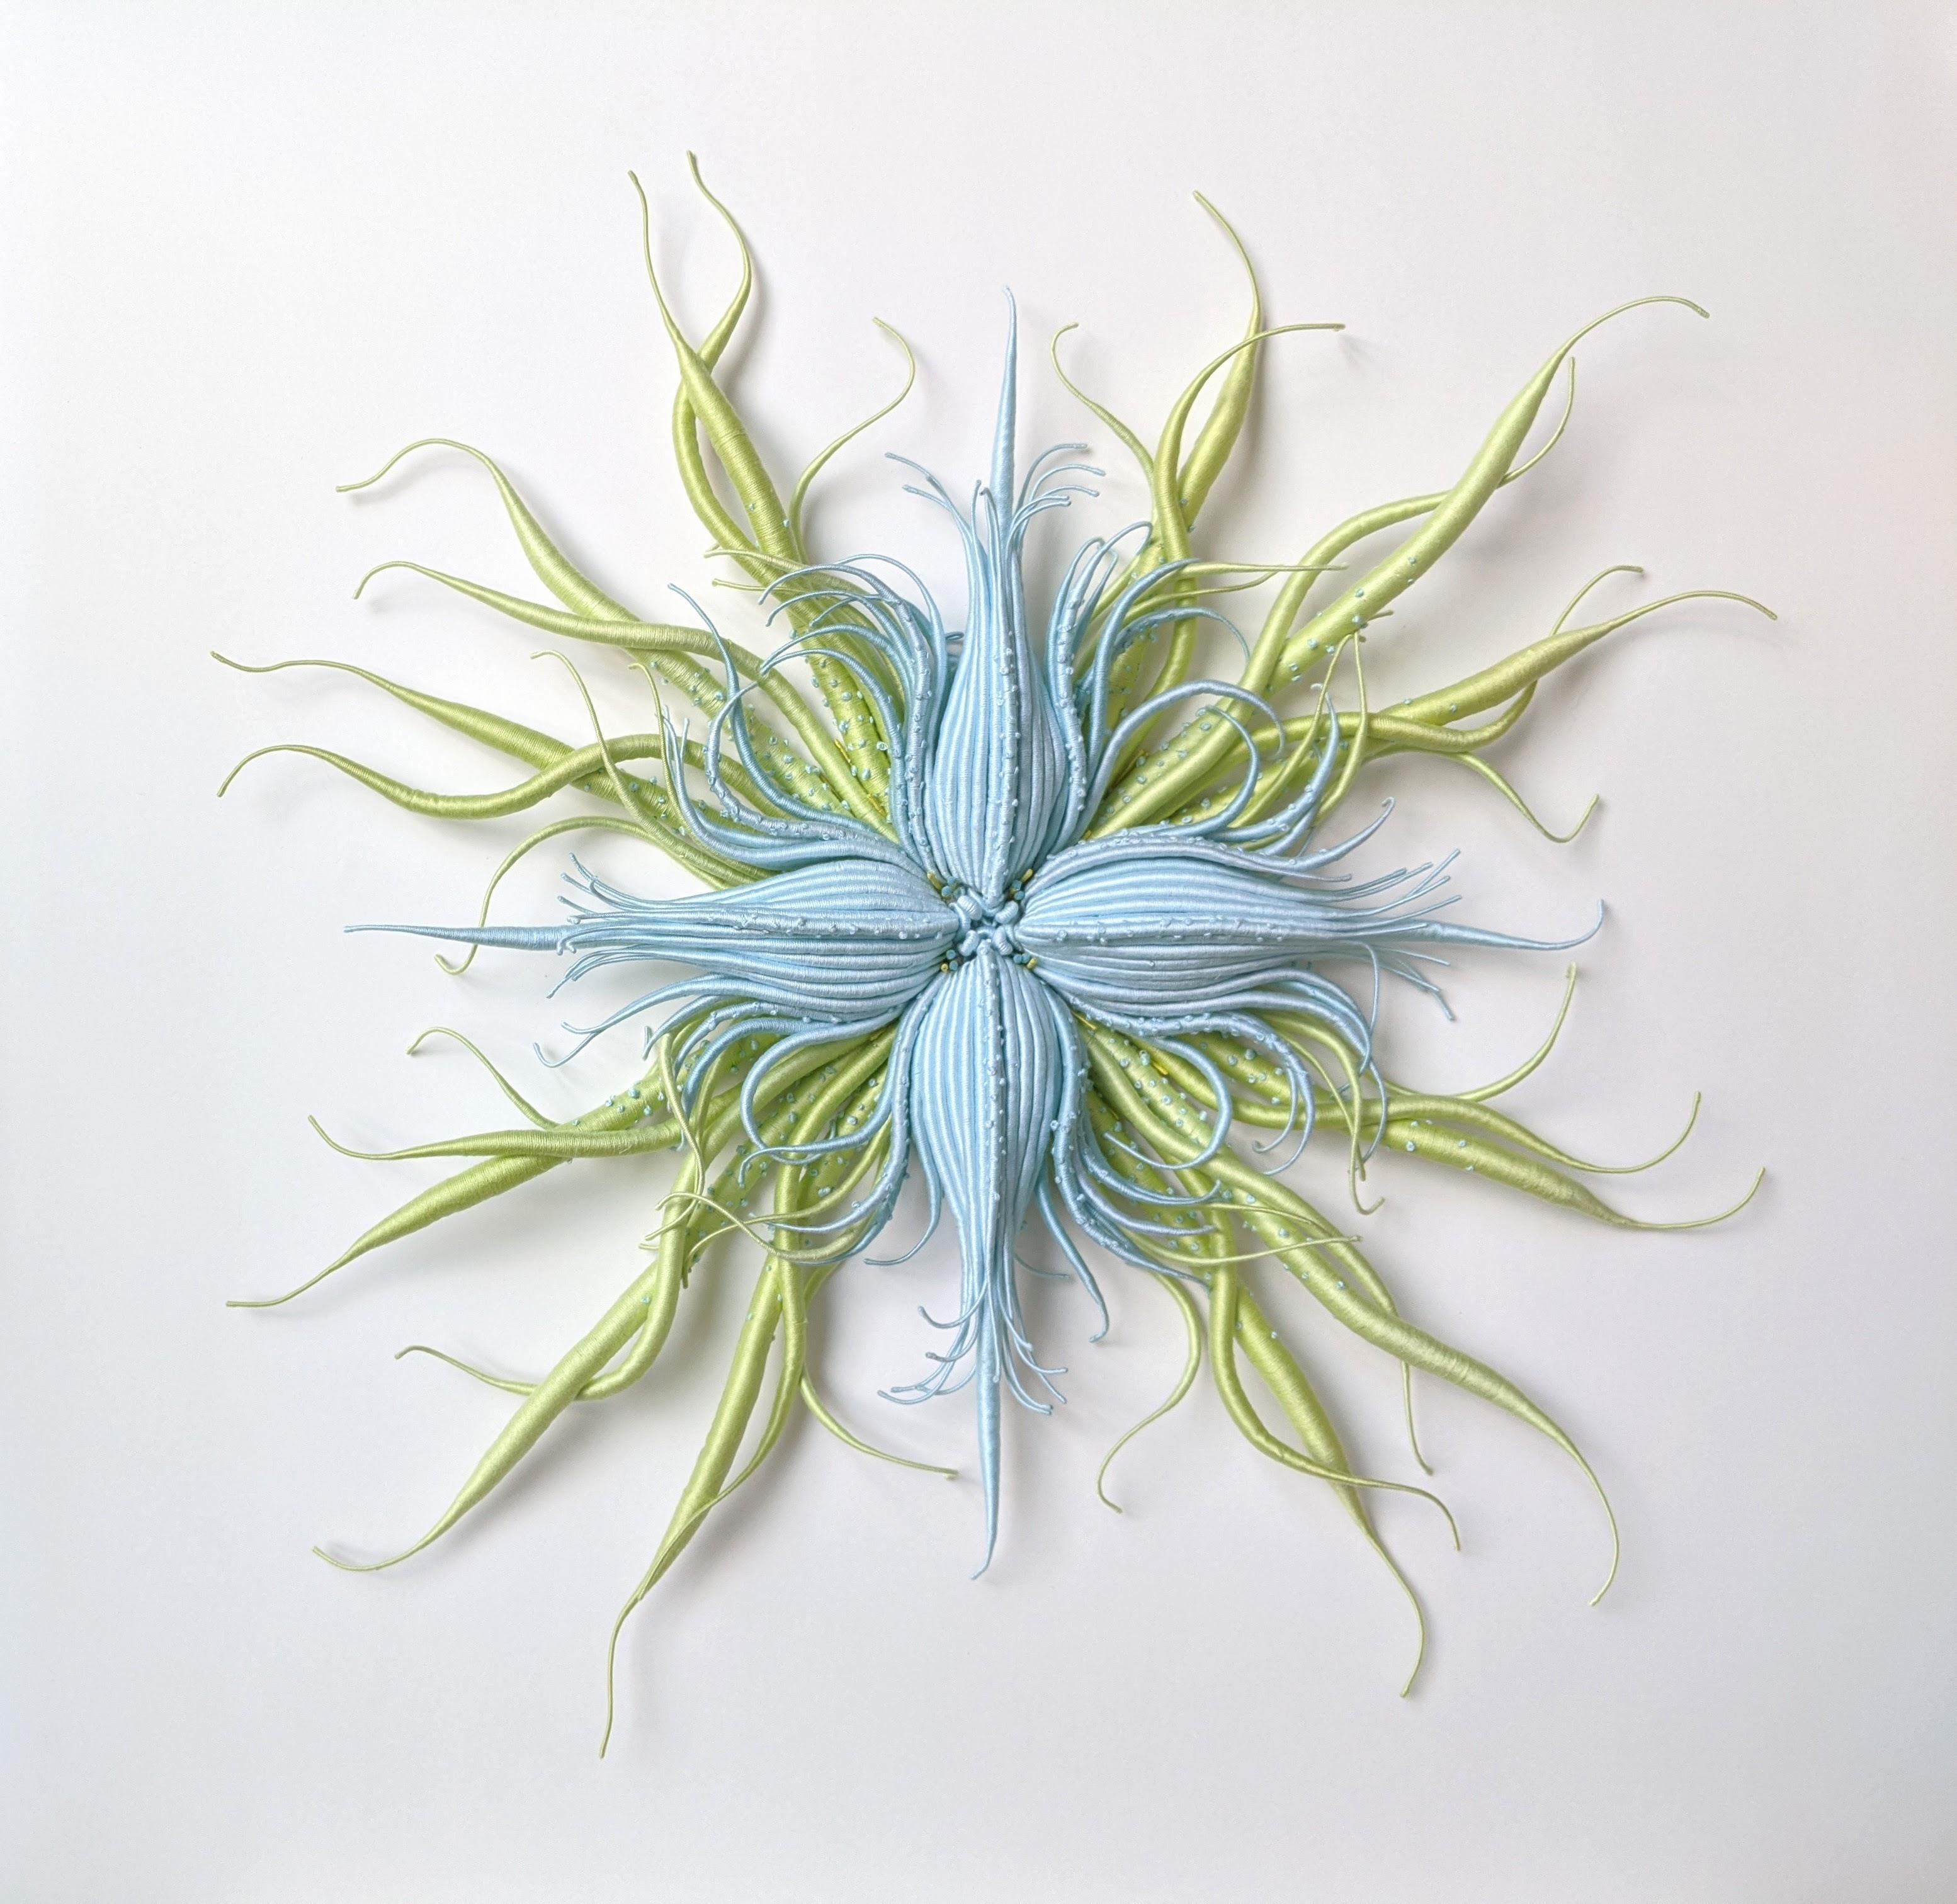 Specimen 20, gerahmte, von der Natur inspirierte blau-grüne handgefärbte Faserskulptur